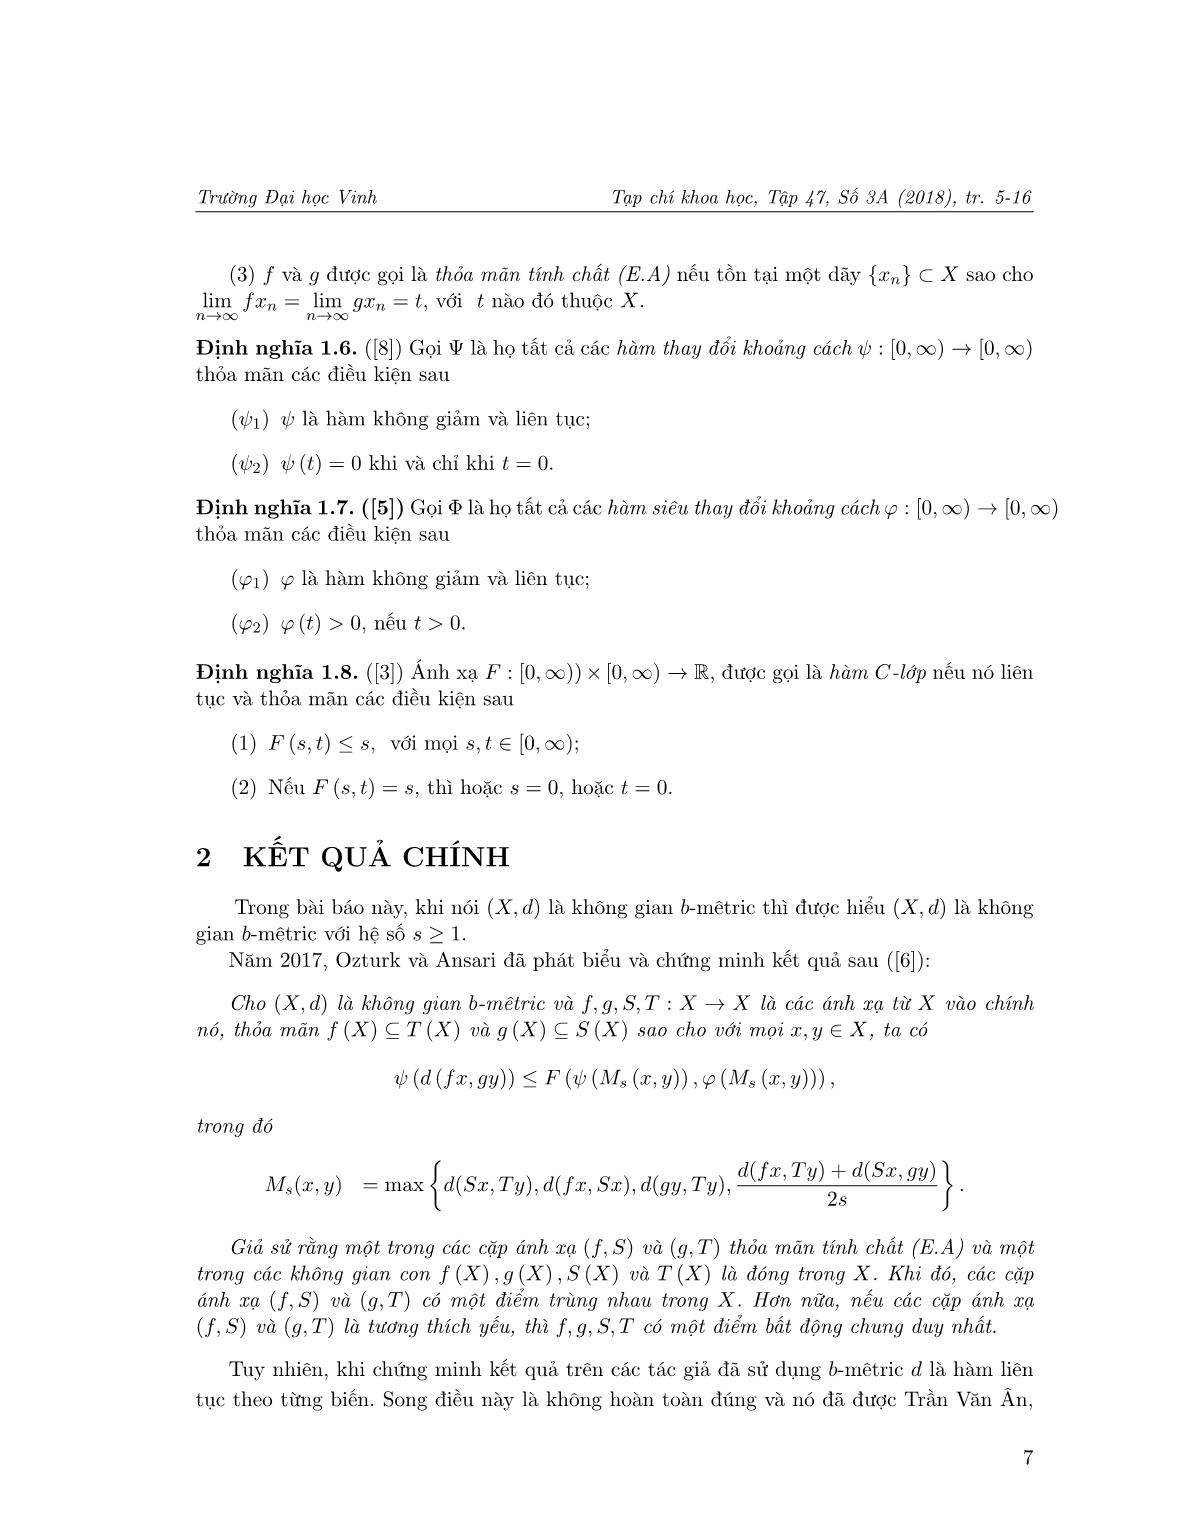 Điểm bất động chung của các ánh xạ co nhờ hàm C-lớp với tính chất (E.A) trong không gian b-Mêtric trang 3